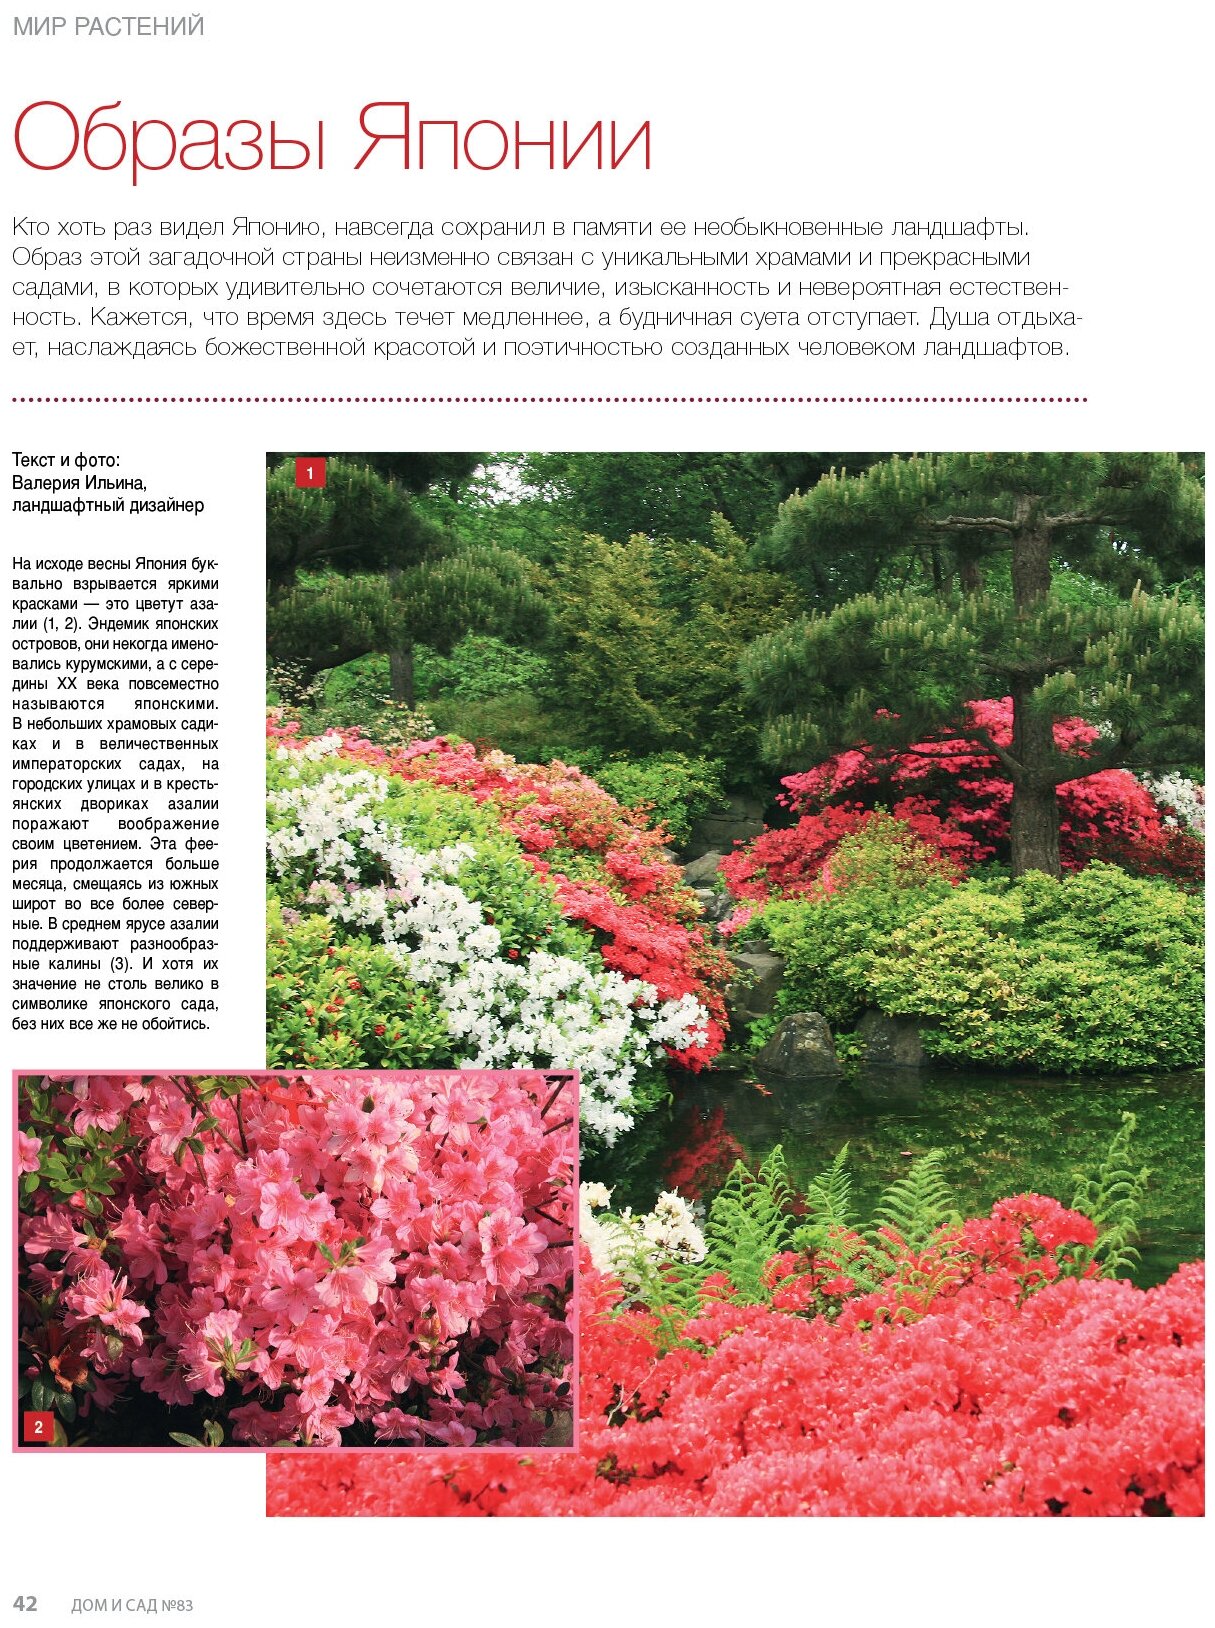 Журнал Дом и сад №2 (83) 2015